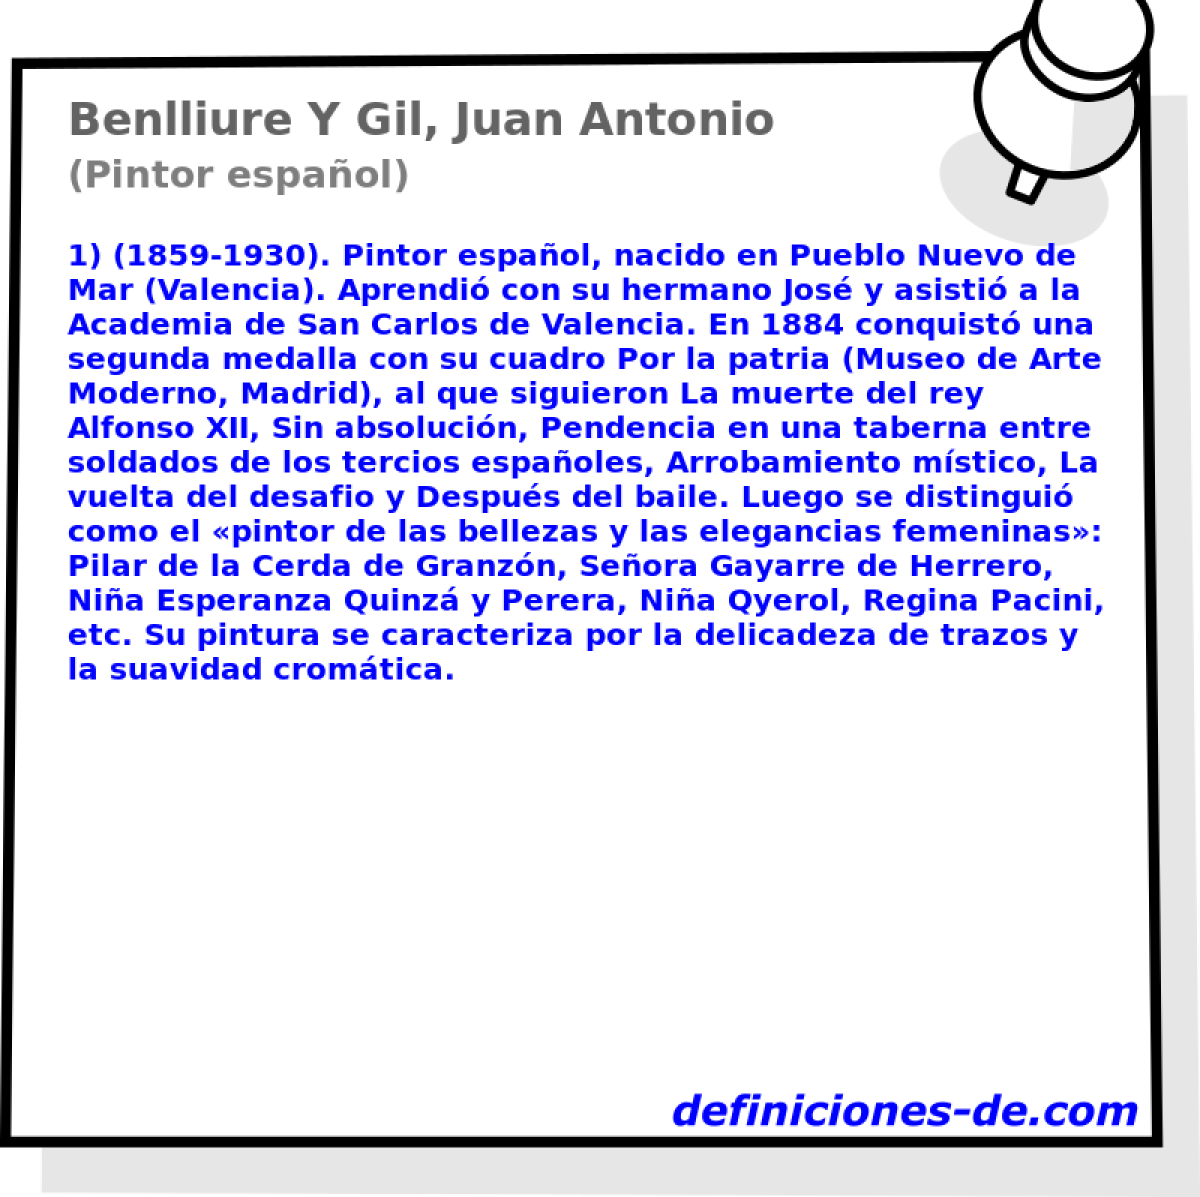 Benlliure Y Gil, Juan Antonio (Pintor espaol)